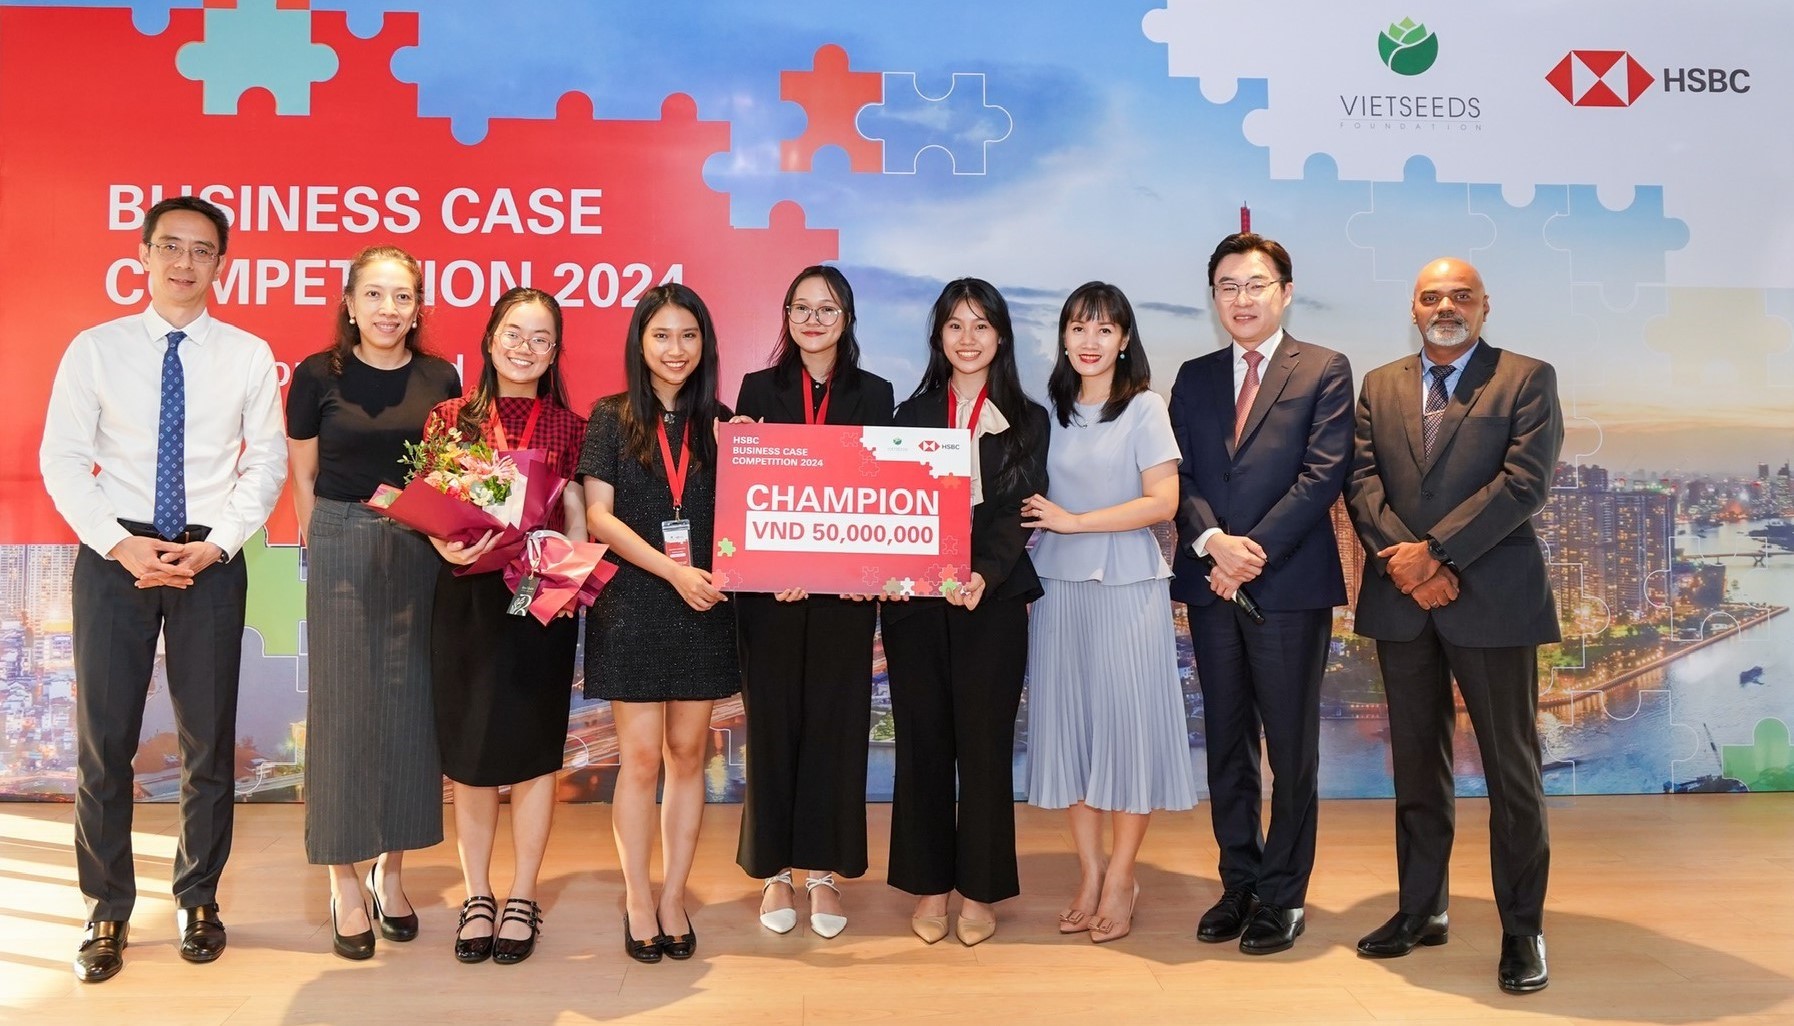 Sinh viên trường đại học VINUNIVERSITY thẳng tiến đến Hồng Kông tham gia cuộc thi giải quyết tình huống kinh doanh HSBC khu vực Châu Á - Thái Bình Dương